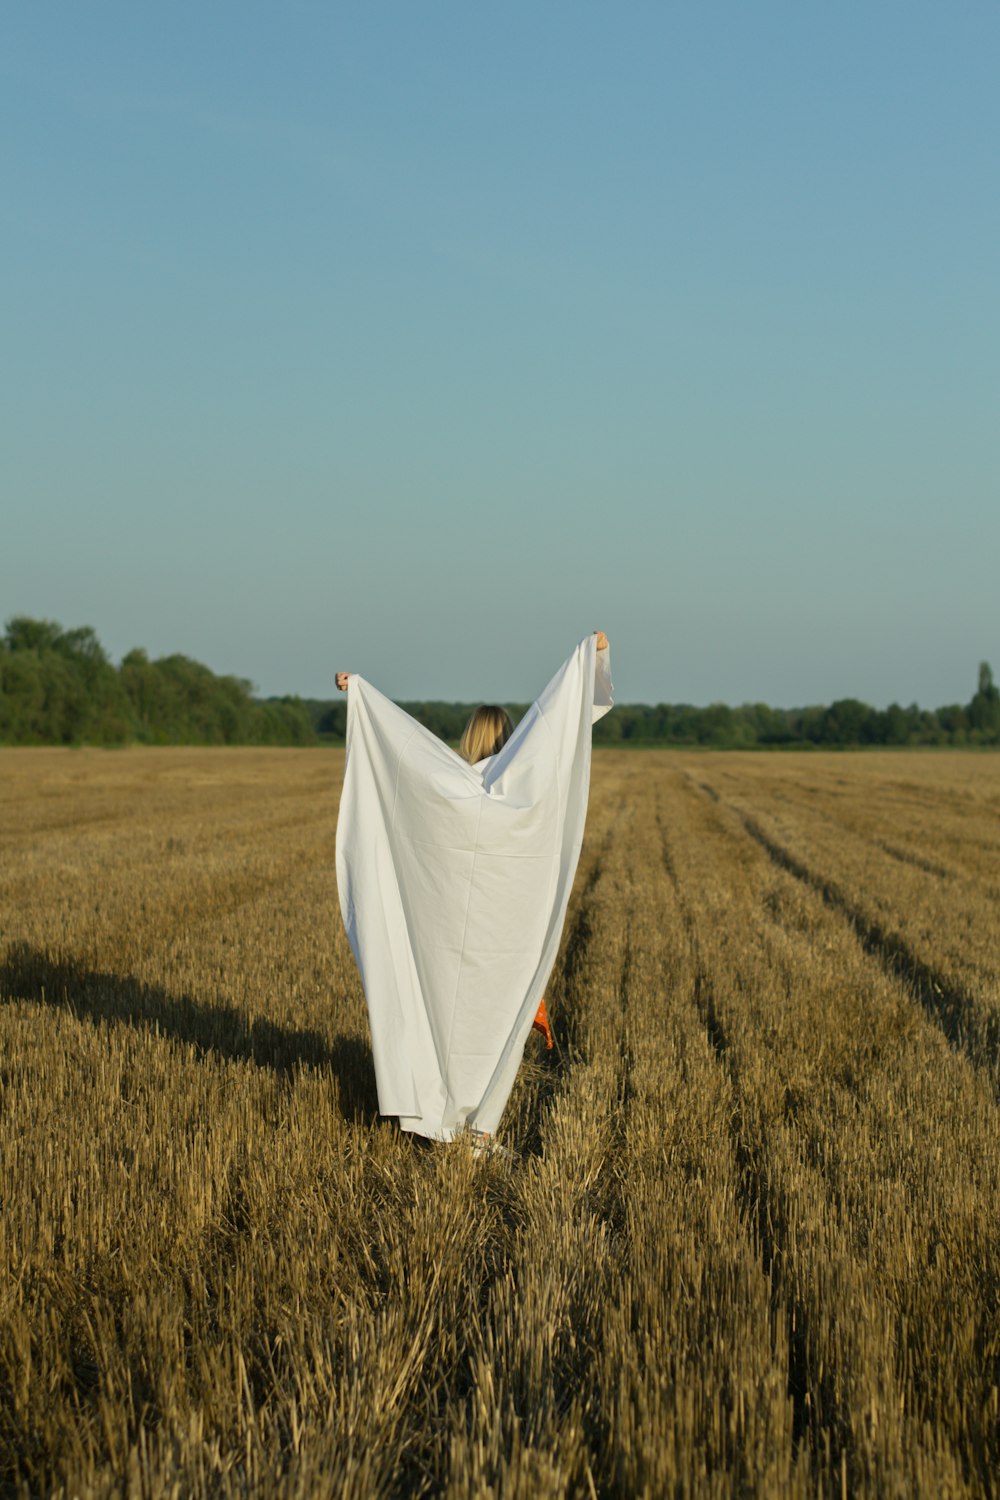 têxtil branco no campo de grama marrom durante o dia